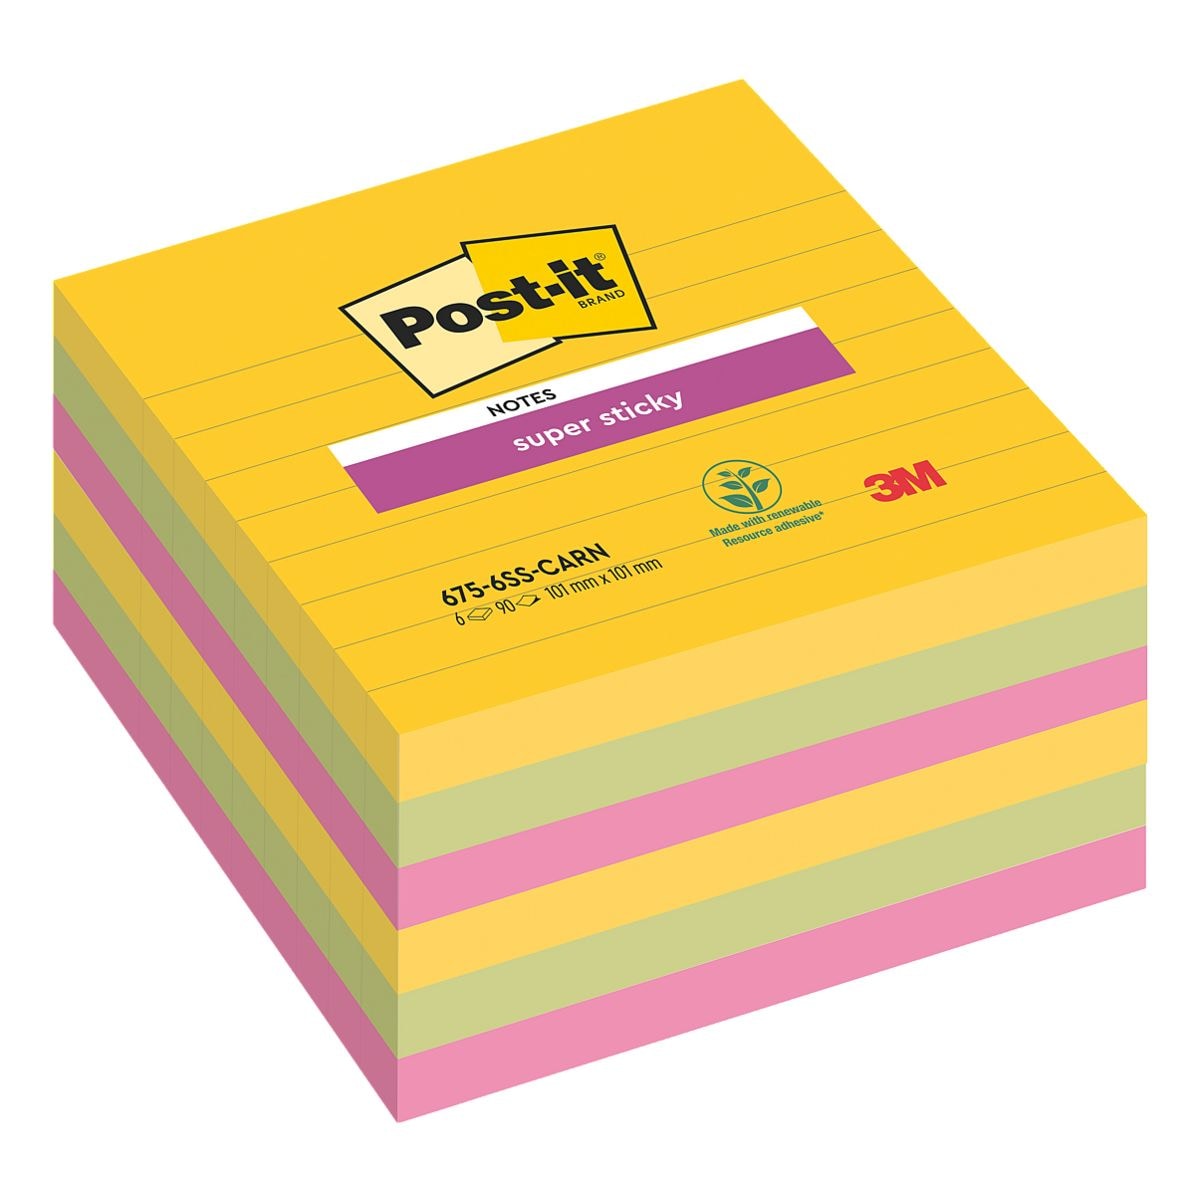 6x Post-it Super Sticky blok herkleefbare notes  Carnaval Collection gelinieerd 10,1 x 10,1 cm, 540 bladen (totaal), gesorteerd in kleuren 675-6SS-CARN